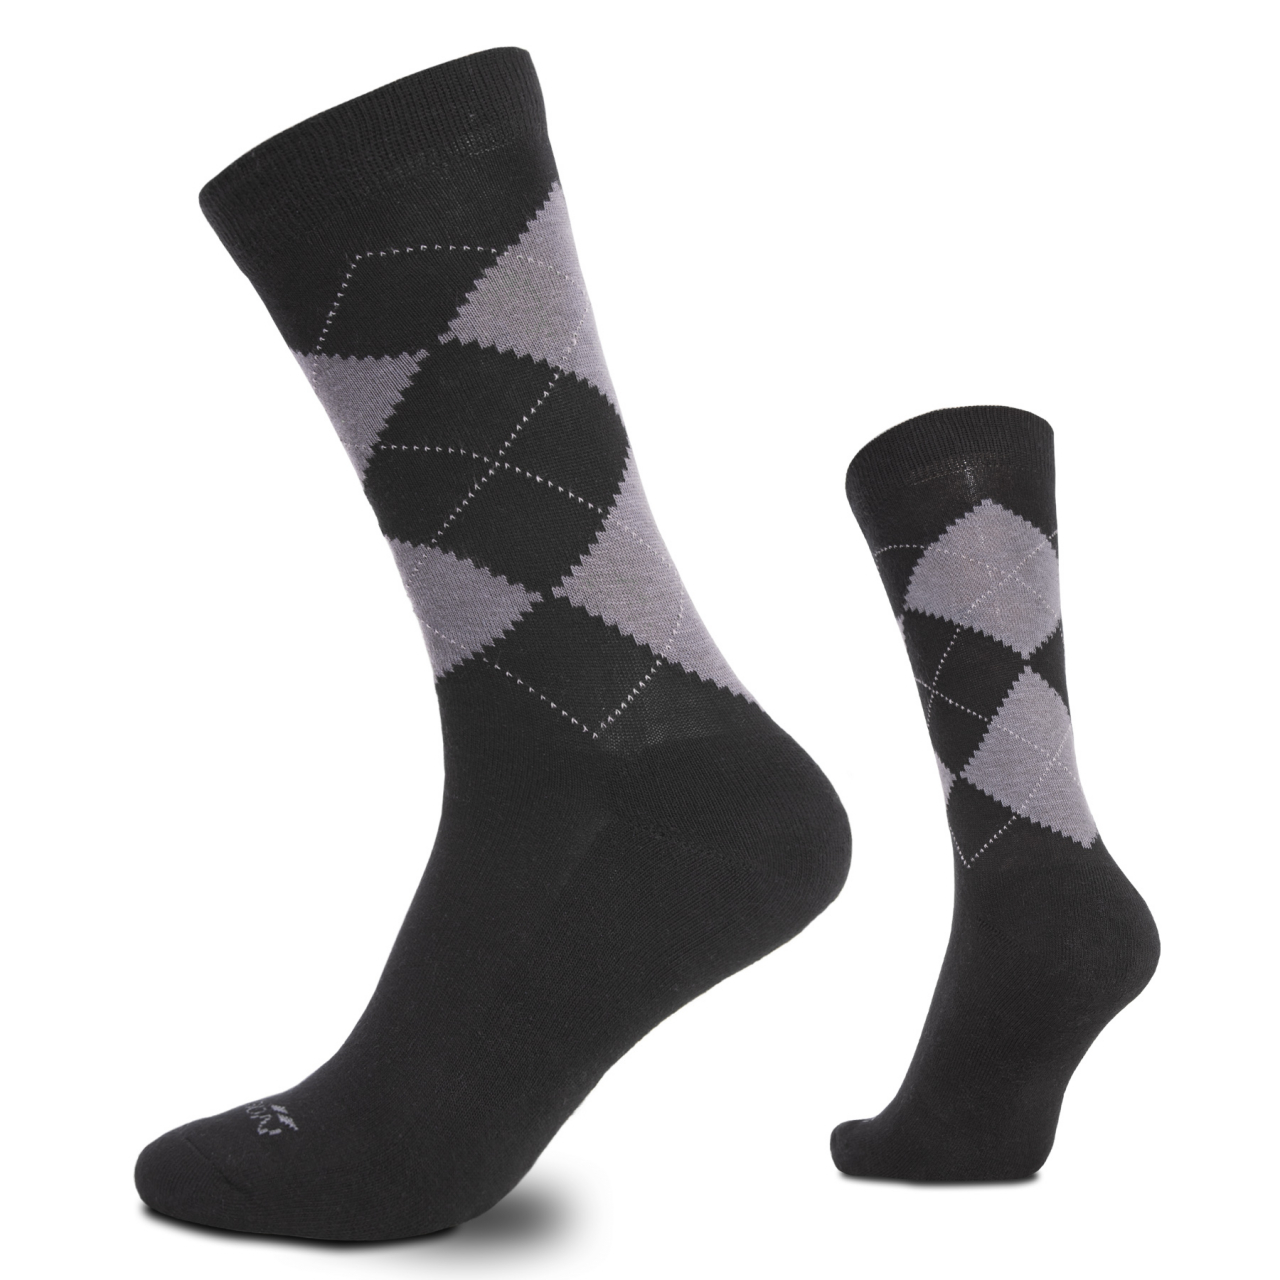 Ponožky Pentagon Phineas - černé, 45-47